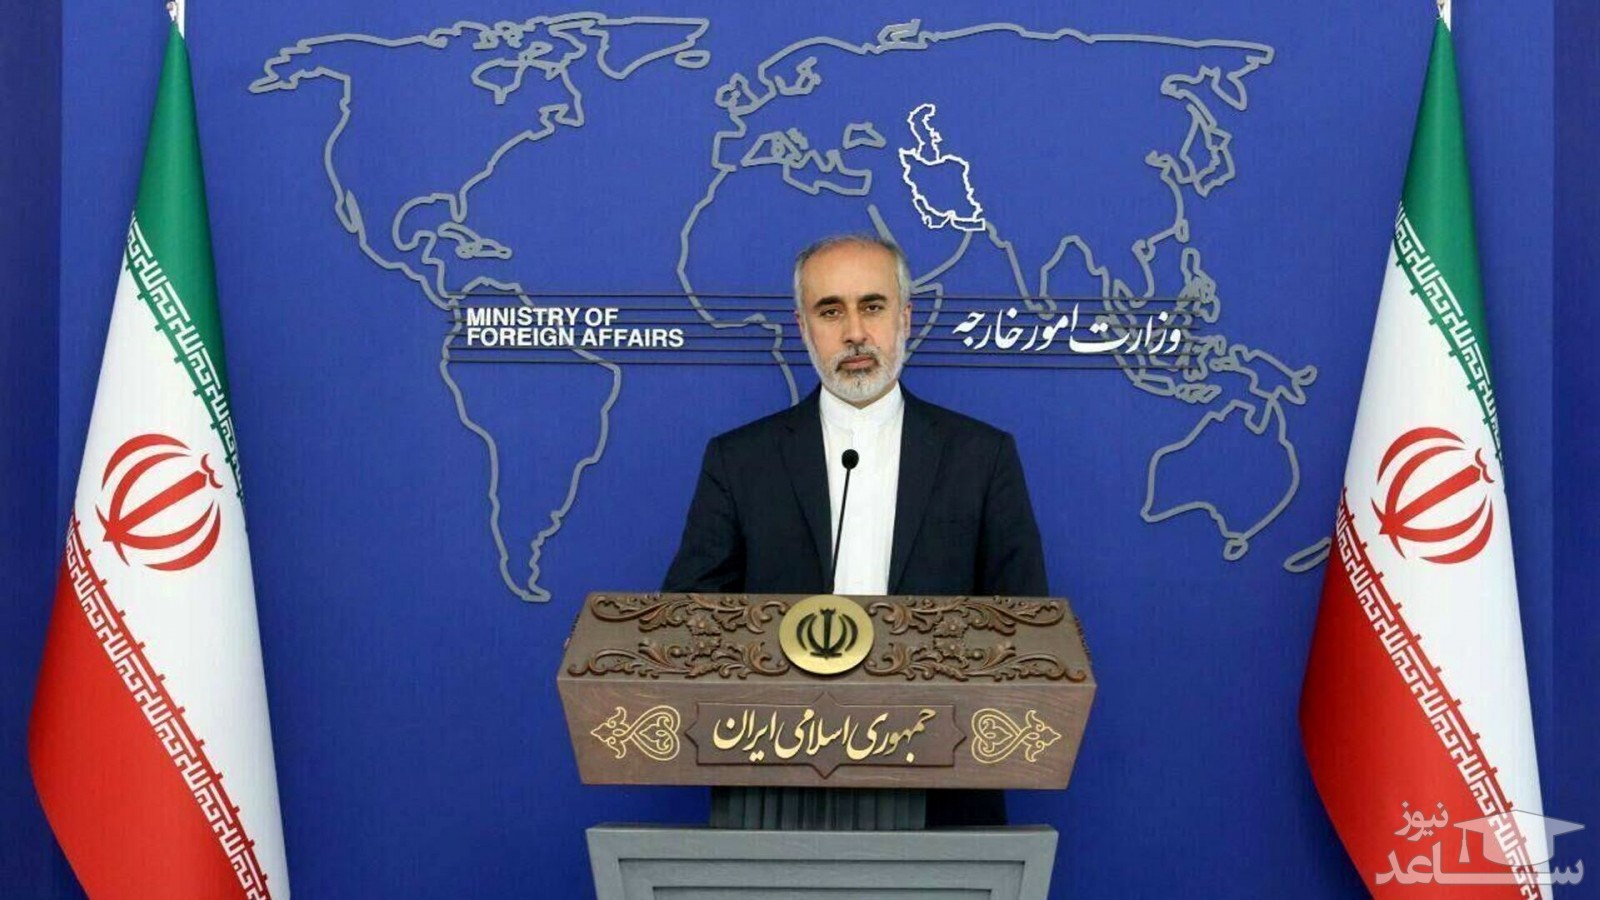 آخرین وضعیت کنسولگری باکو در تبریز/ موضع ایران نسبت به جمهوری آذربایجان چیست؟